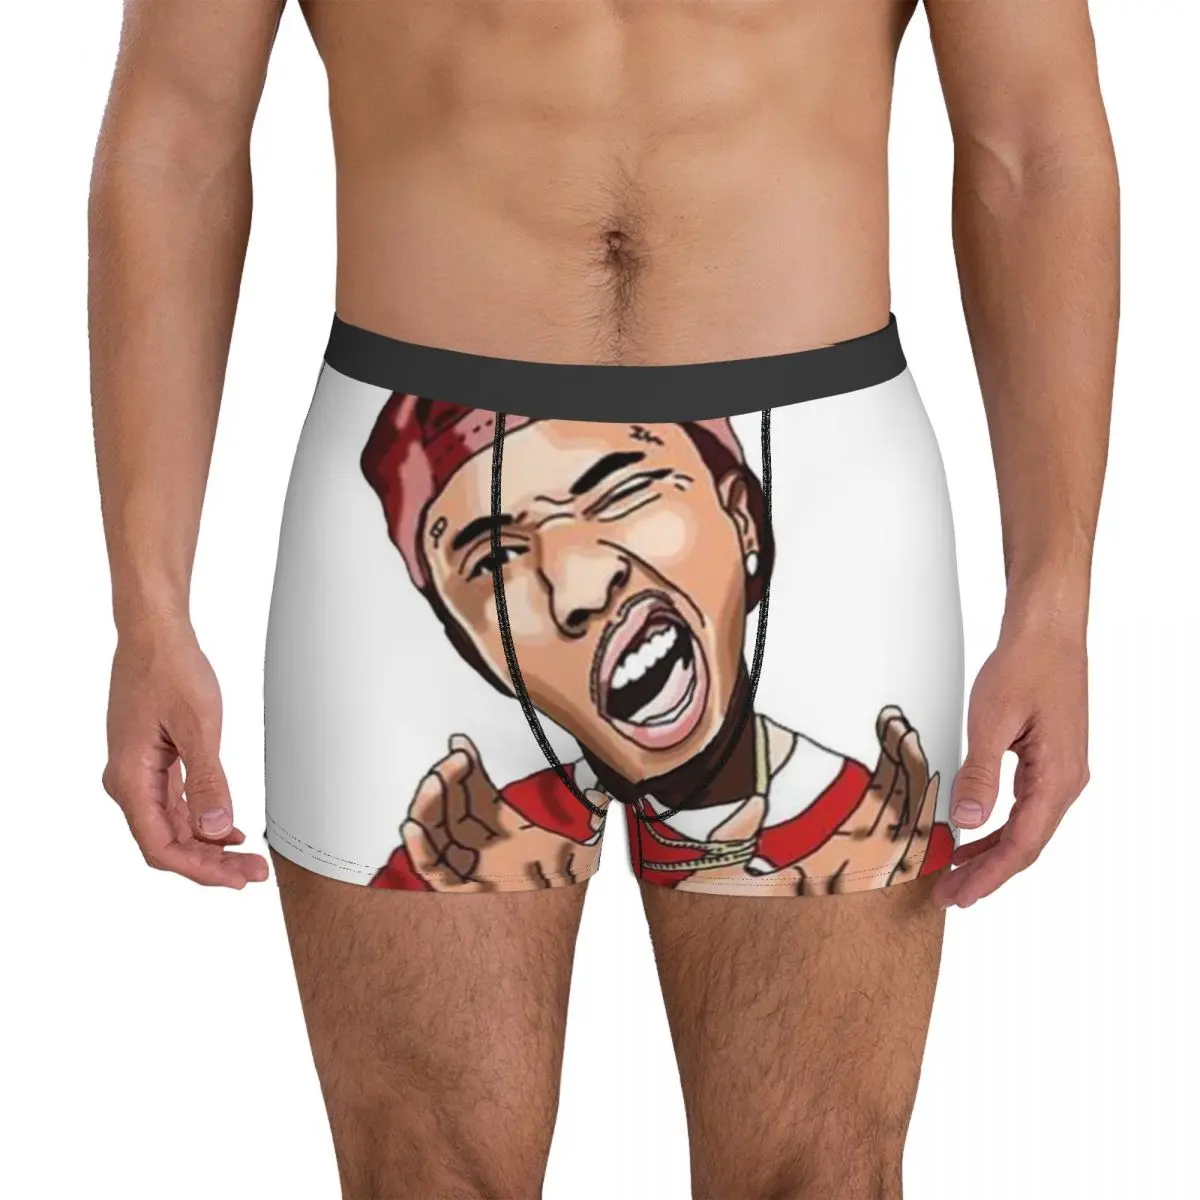 MAIN KARET Tyga Singer Rap Underwear black pump hip pop future Classic Panties Design Boxer Brief 3D Pouch Oversize Boxershorts